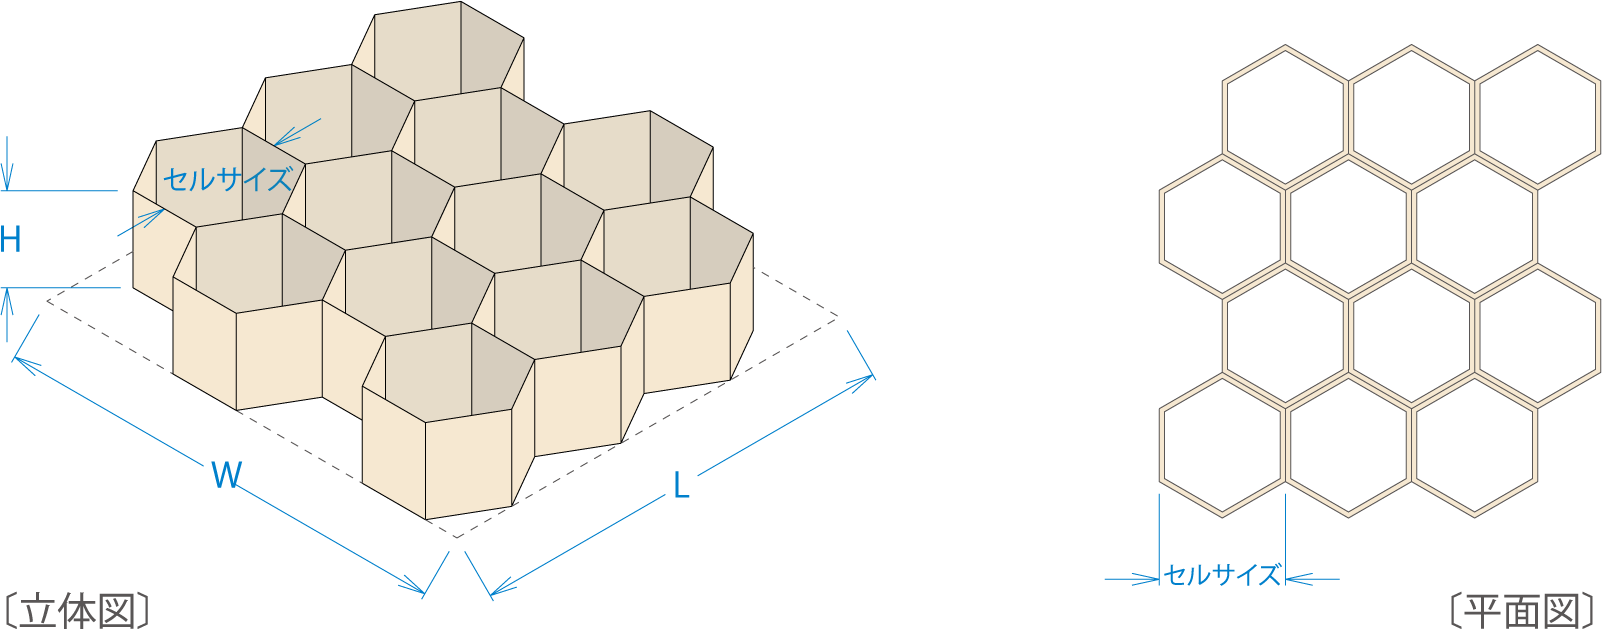 ペーパーハニカムの構造について解説する立体図と平面図。